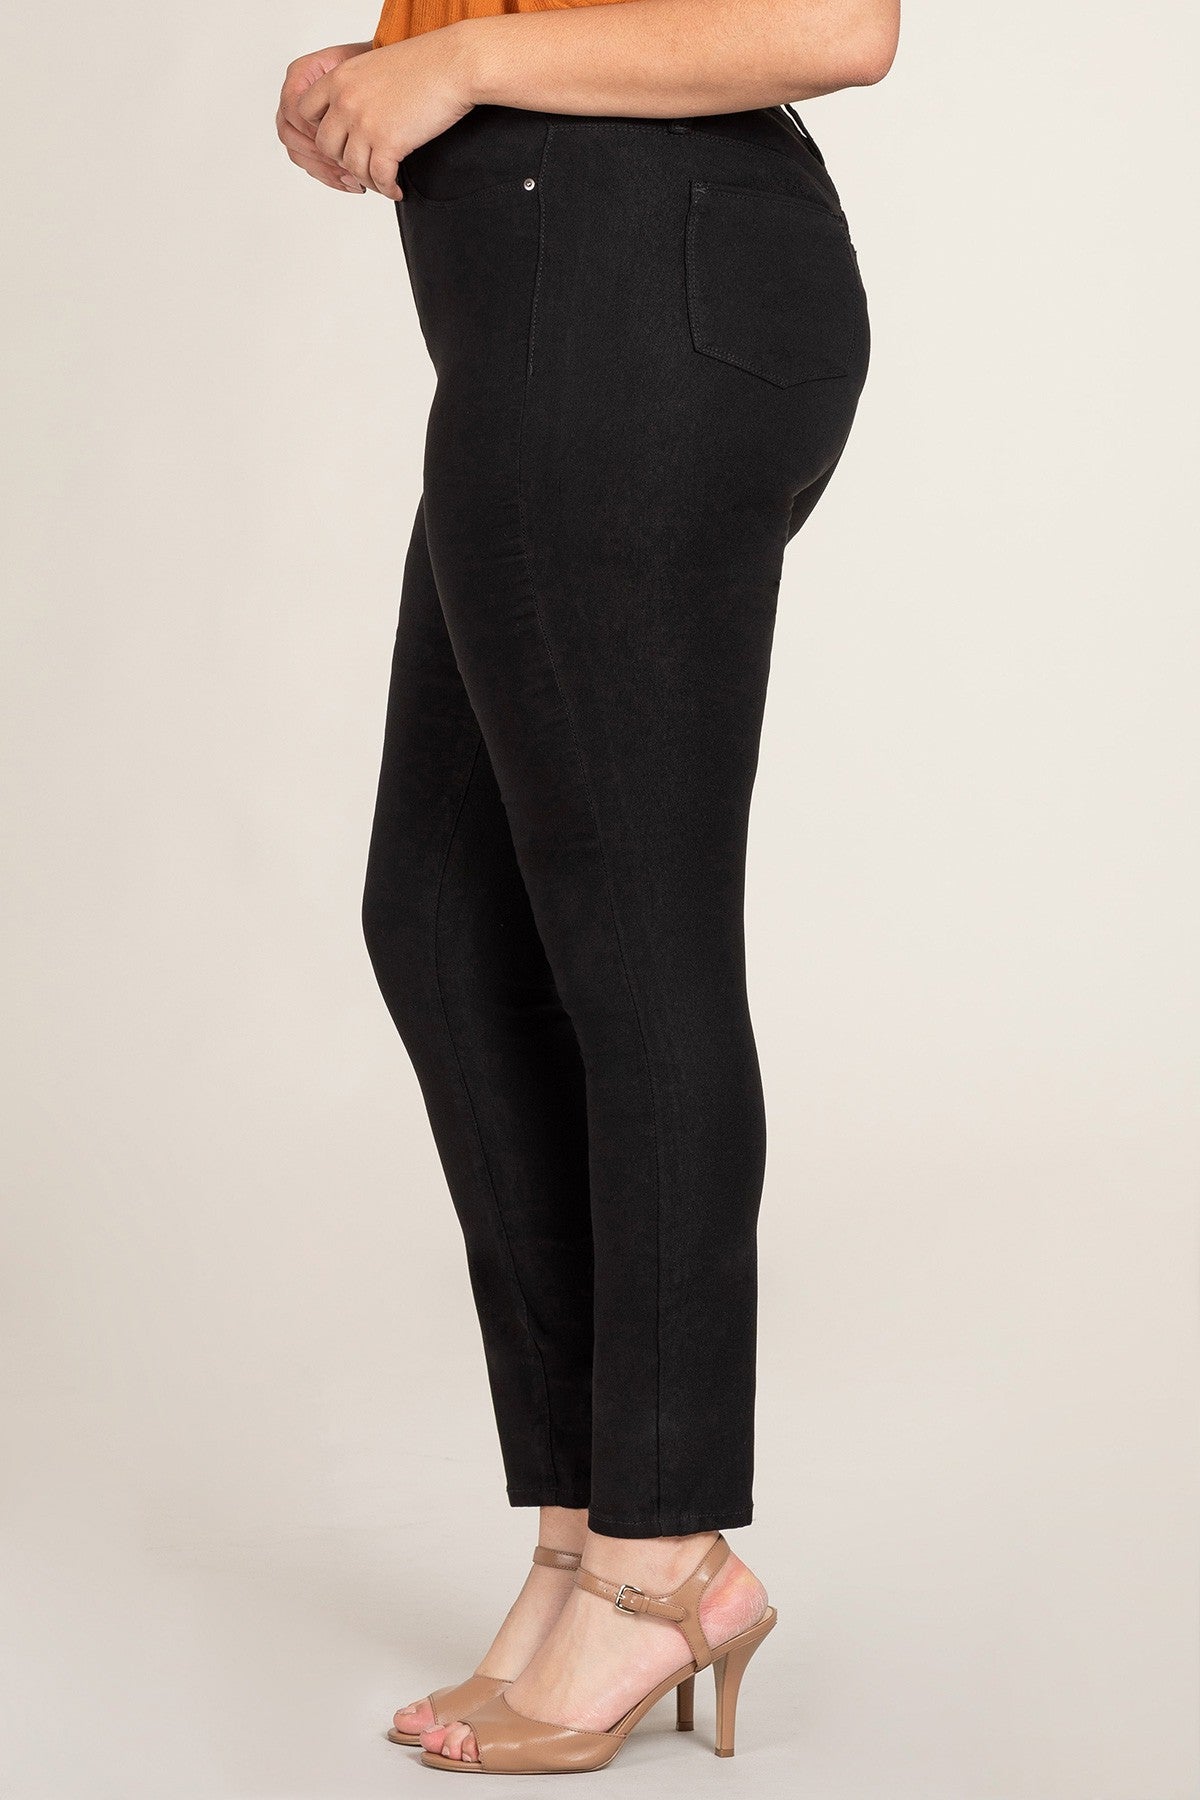 Le pantalon ultra stretch noir essentiel (taille haute)